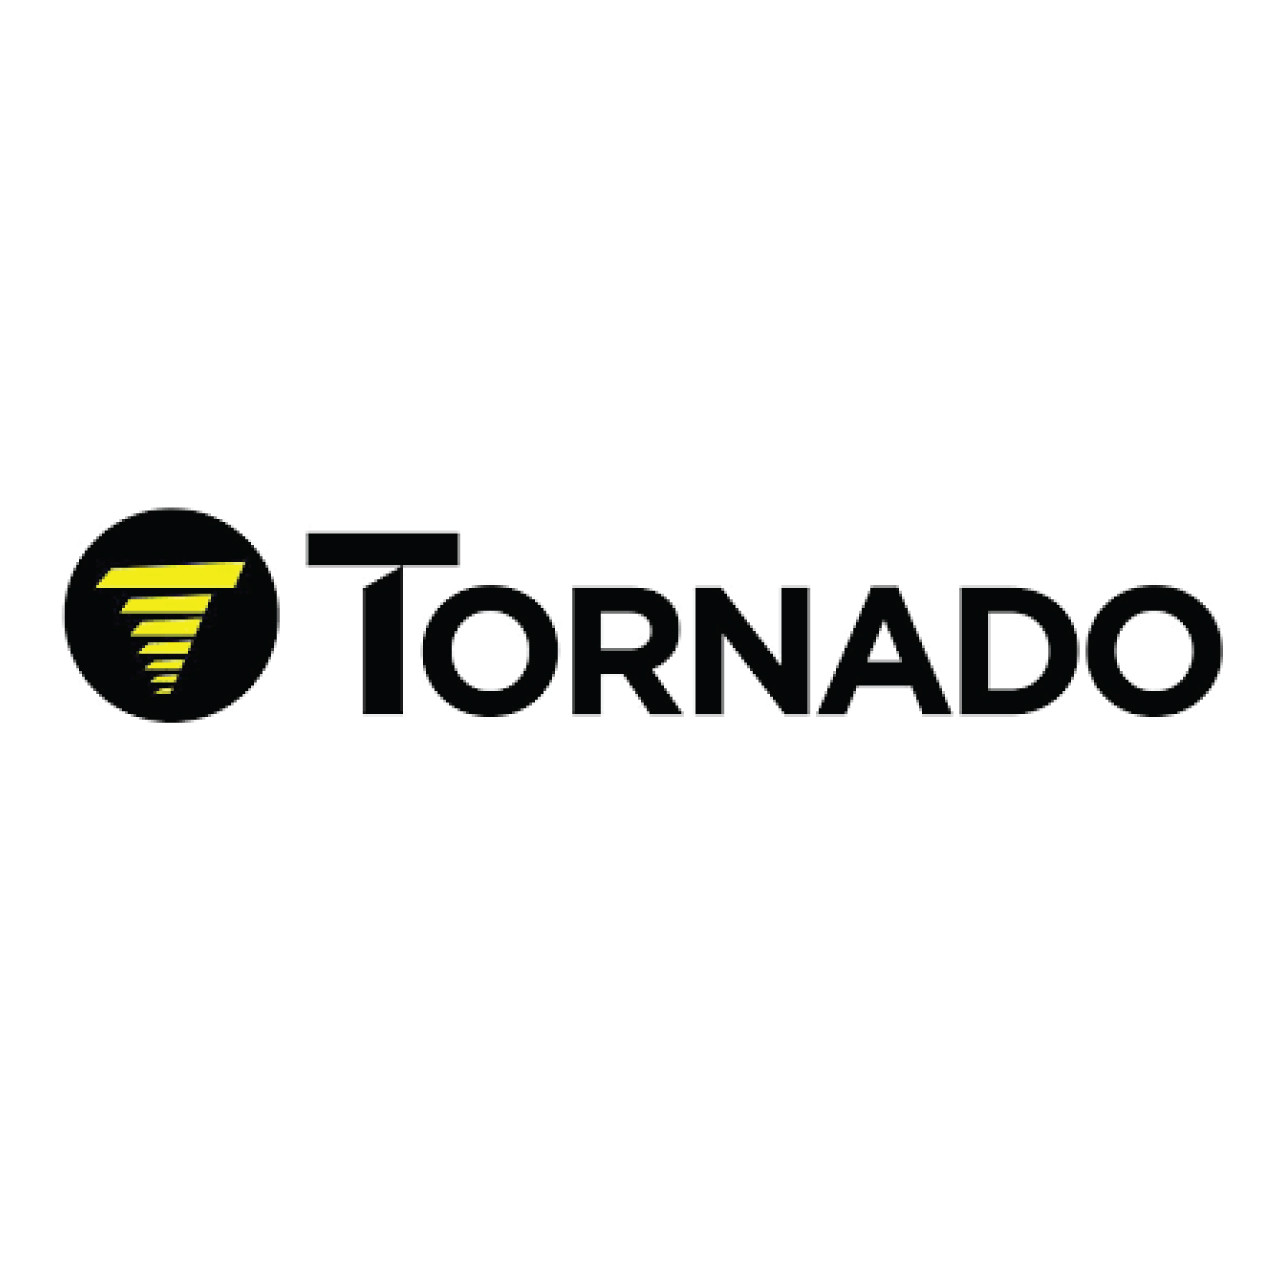 03-5738-0000, Tornado 03-5738-0000, Tornado TILT BEFORE STARTING DECAL DRG.NO:1, Tornado parts